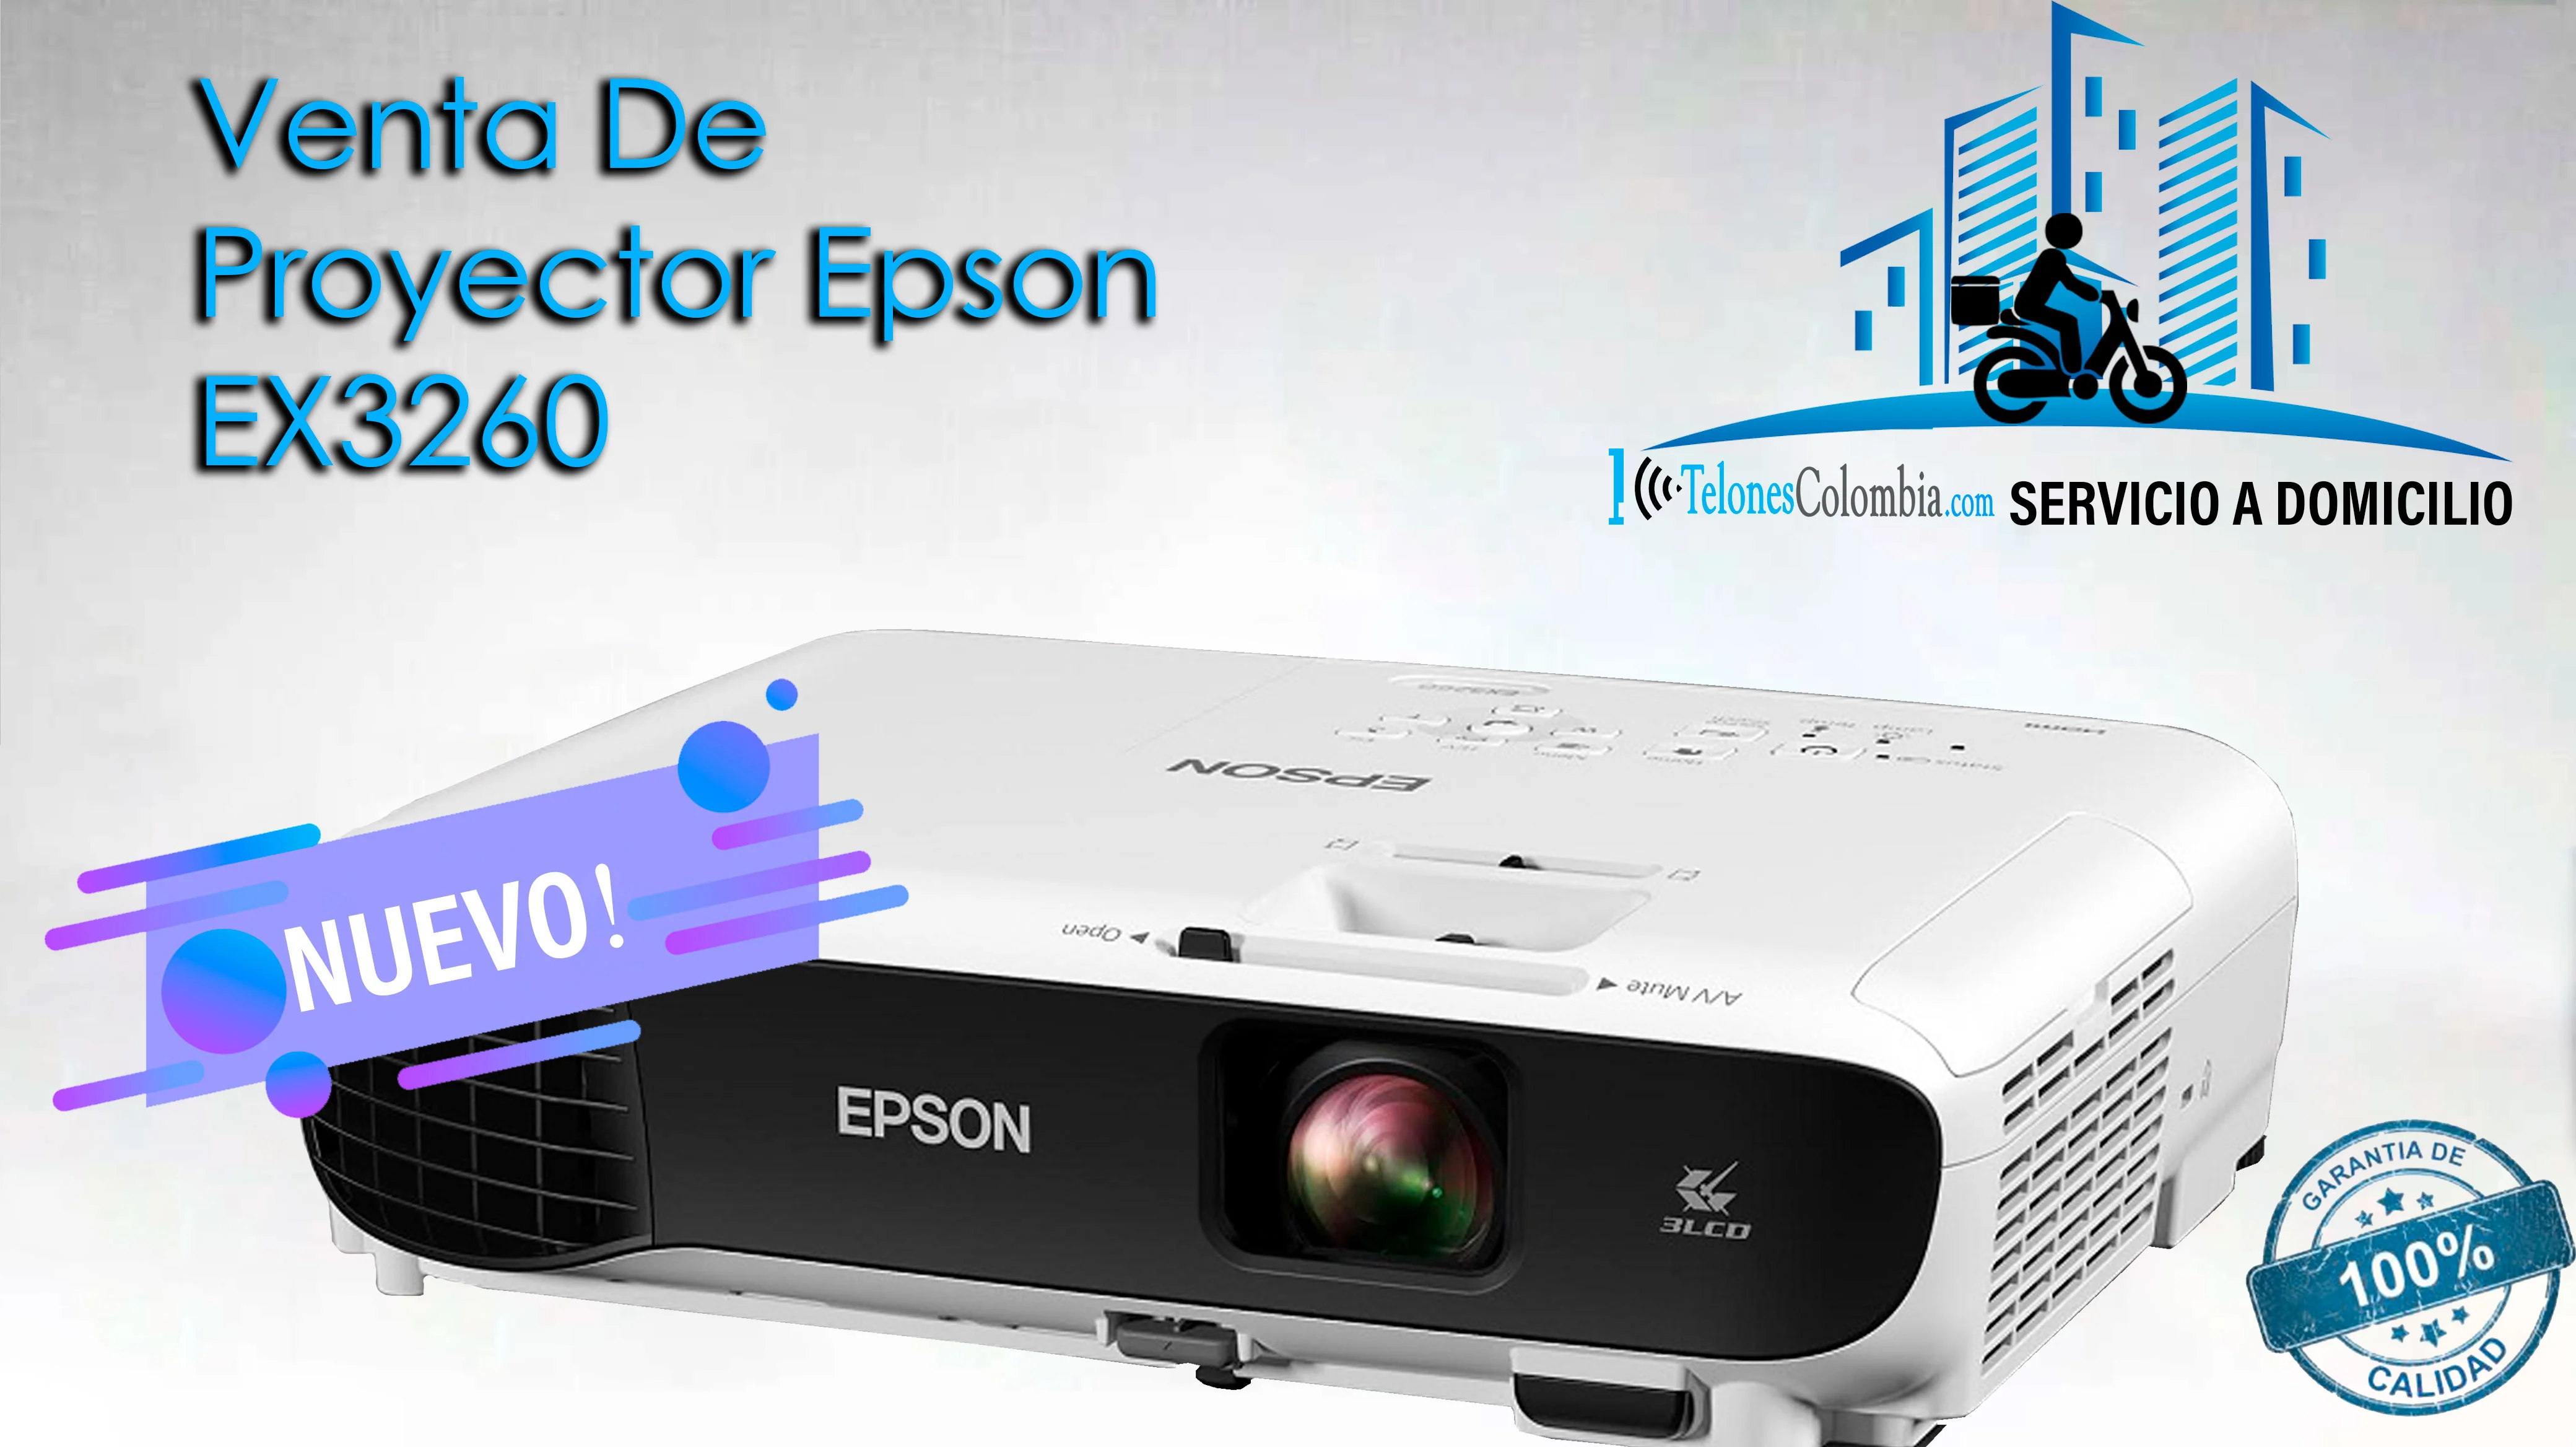 Venta de Proyector Epson EX3260